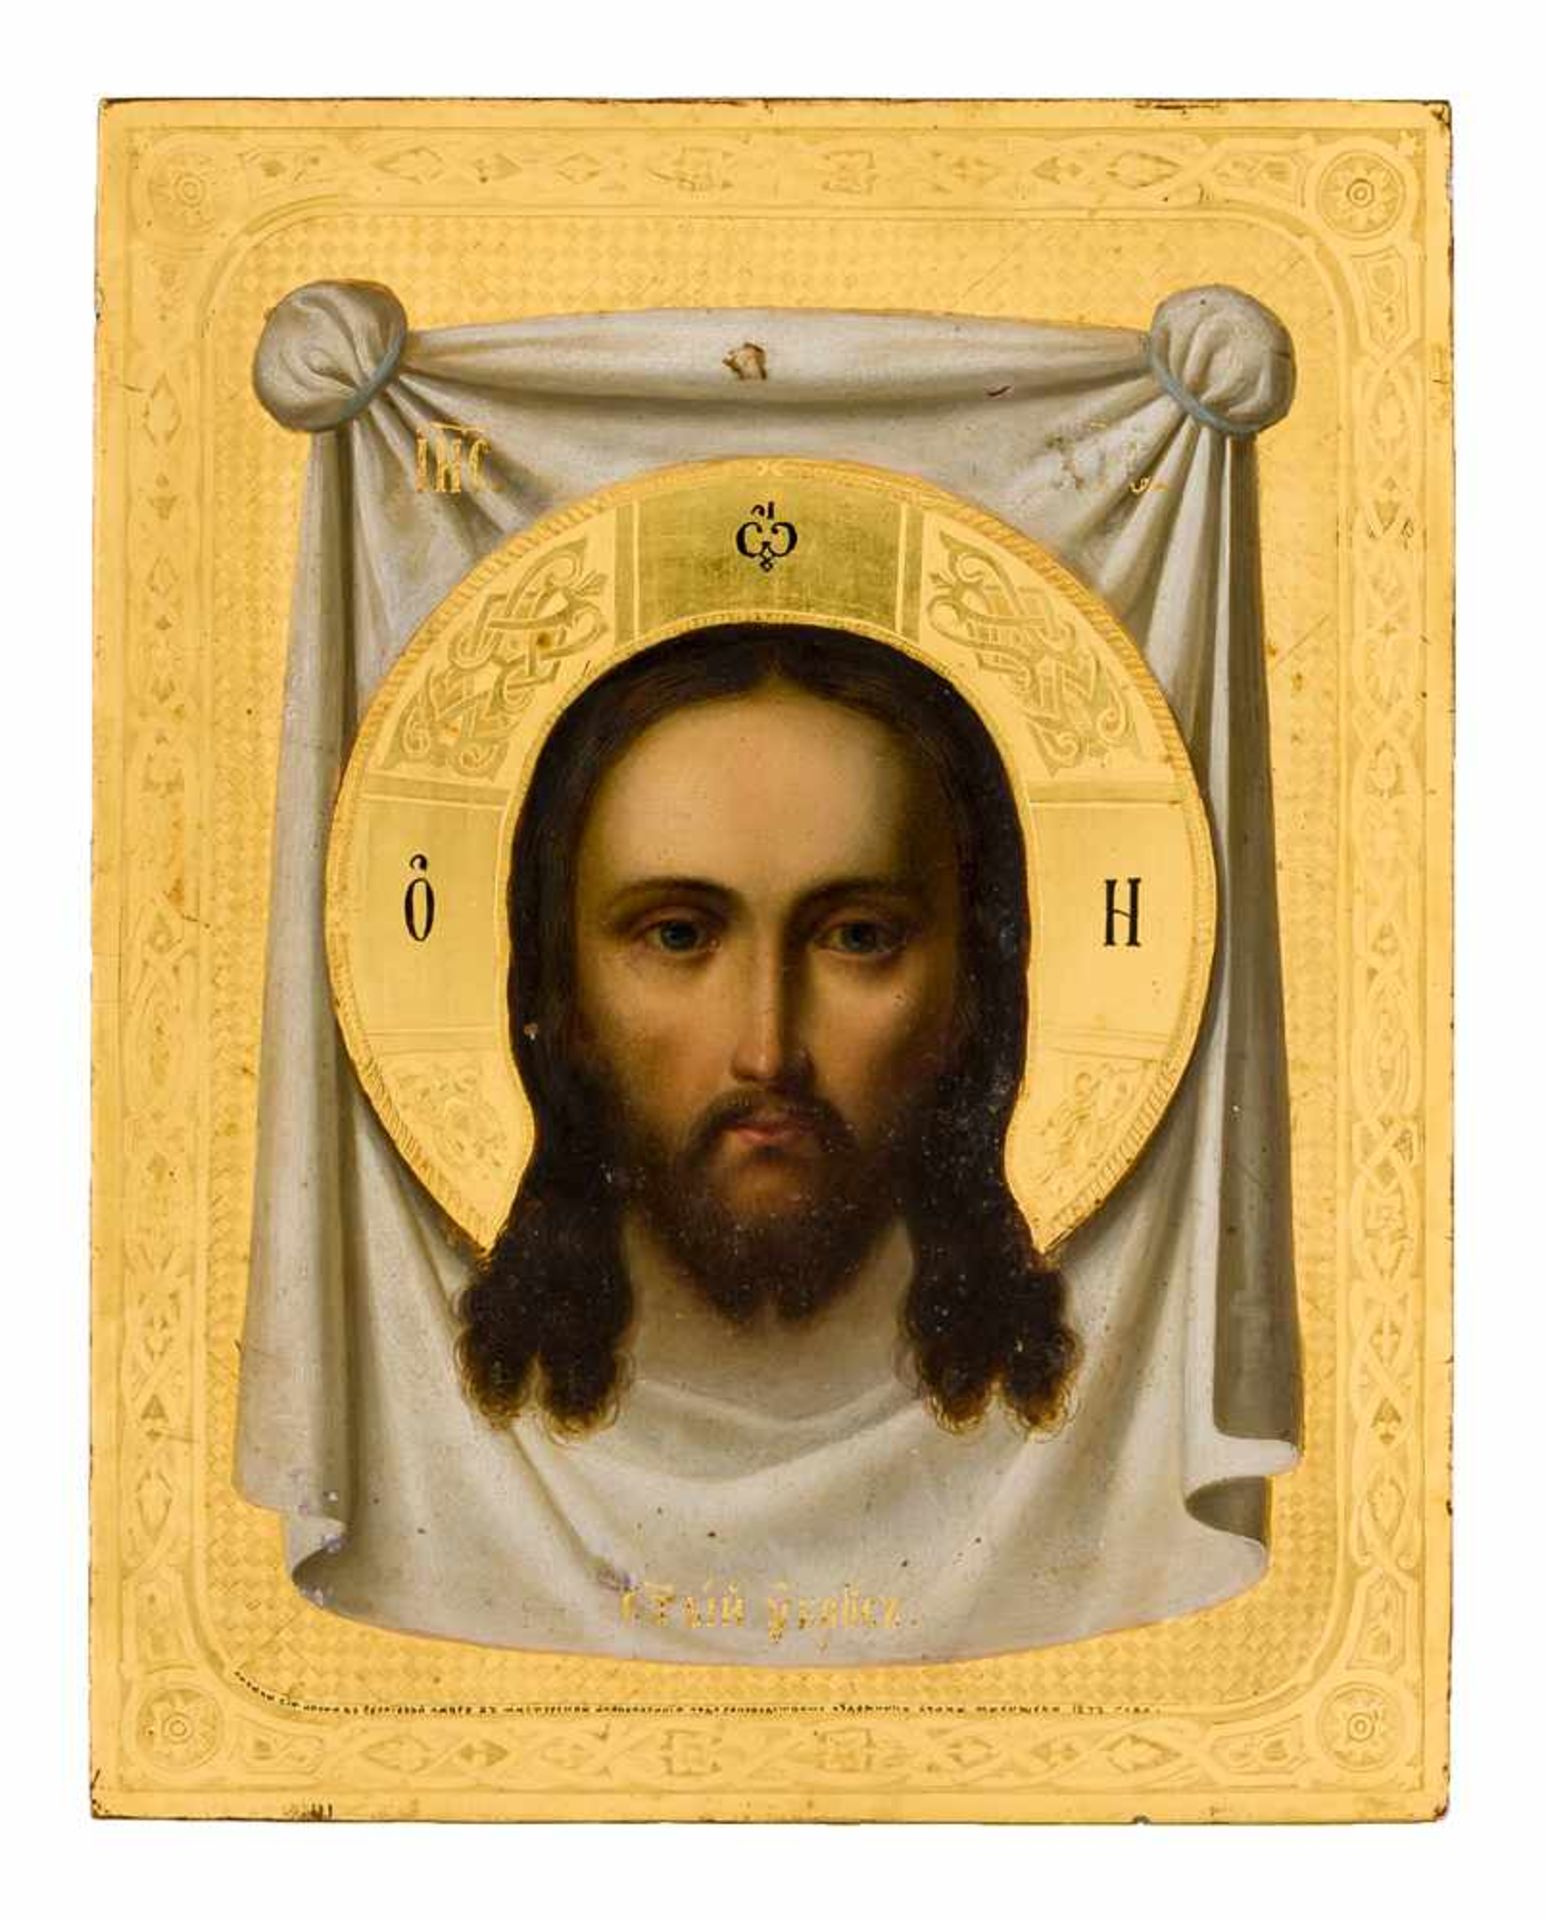 *Mandylion Jesu Russische Ikone aus der Werkstatt Malyshev des Dreifaltigkeitsklosters in Sergiev